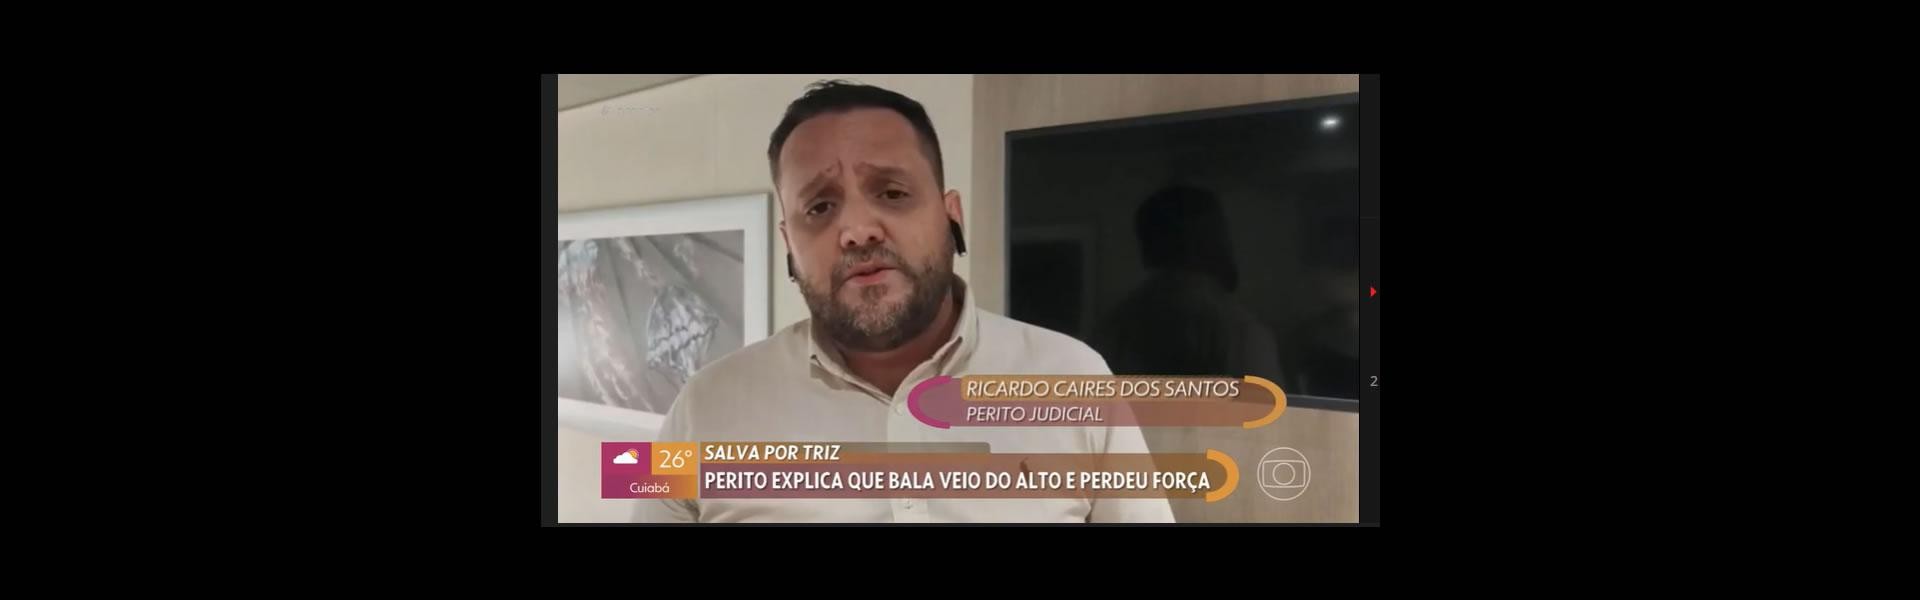 Ricardo Caires perito judicial participou no dia 03/01/2023 na emissora EPTV de televisão da Rede Globo no programa da Patrícia Poeta com o tema sobre 